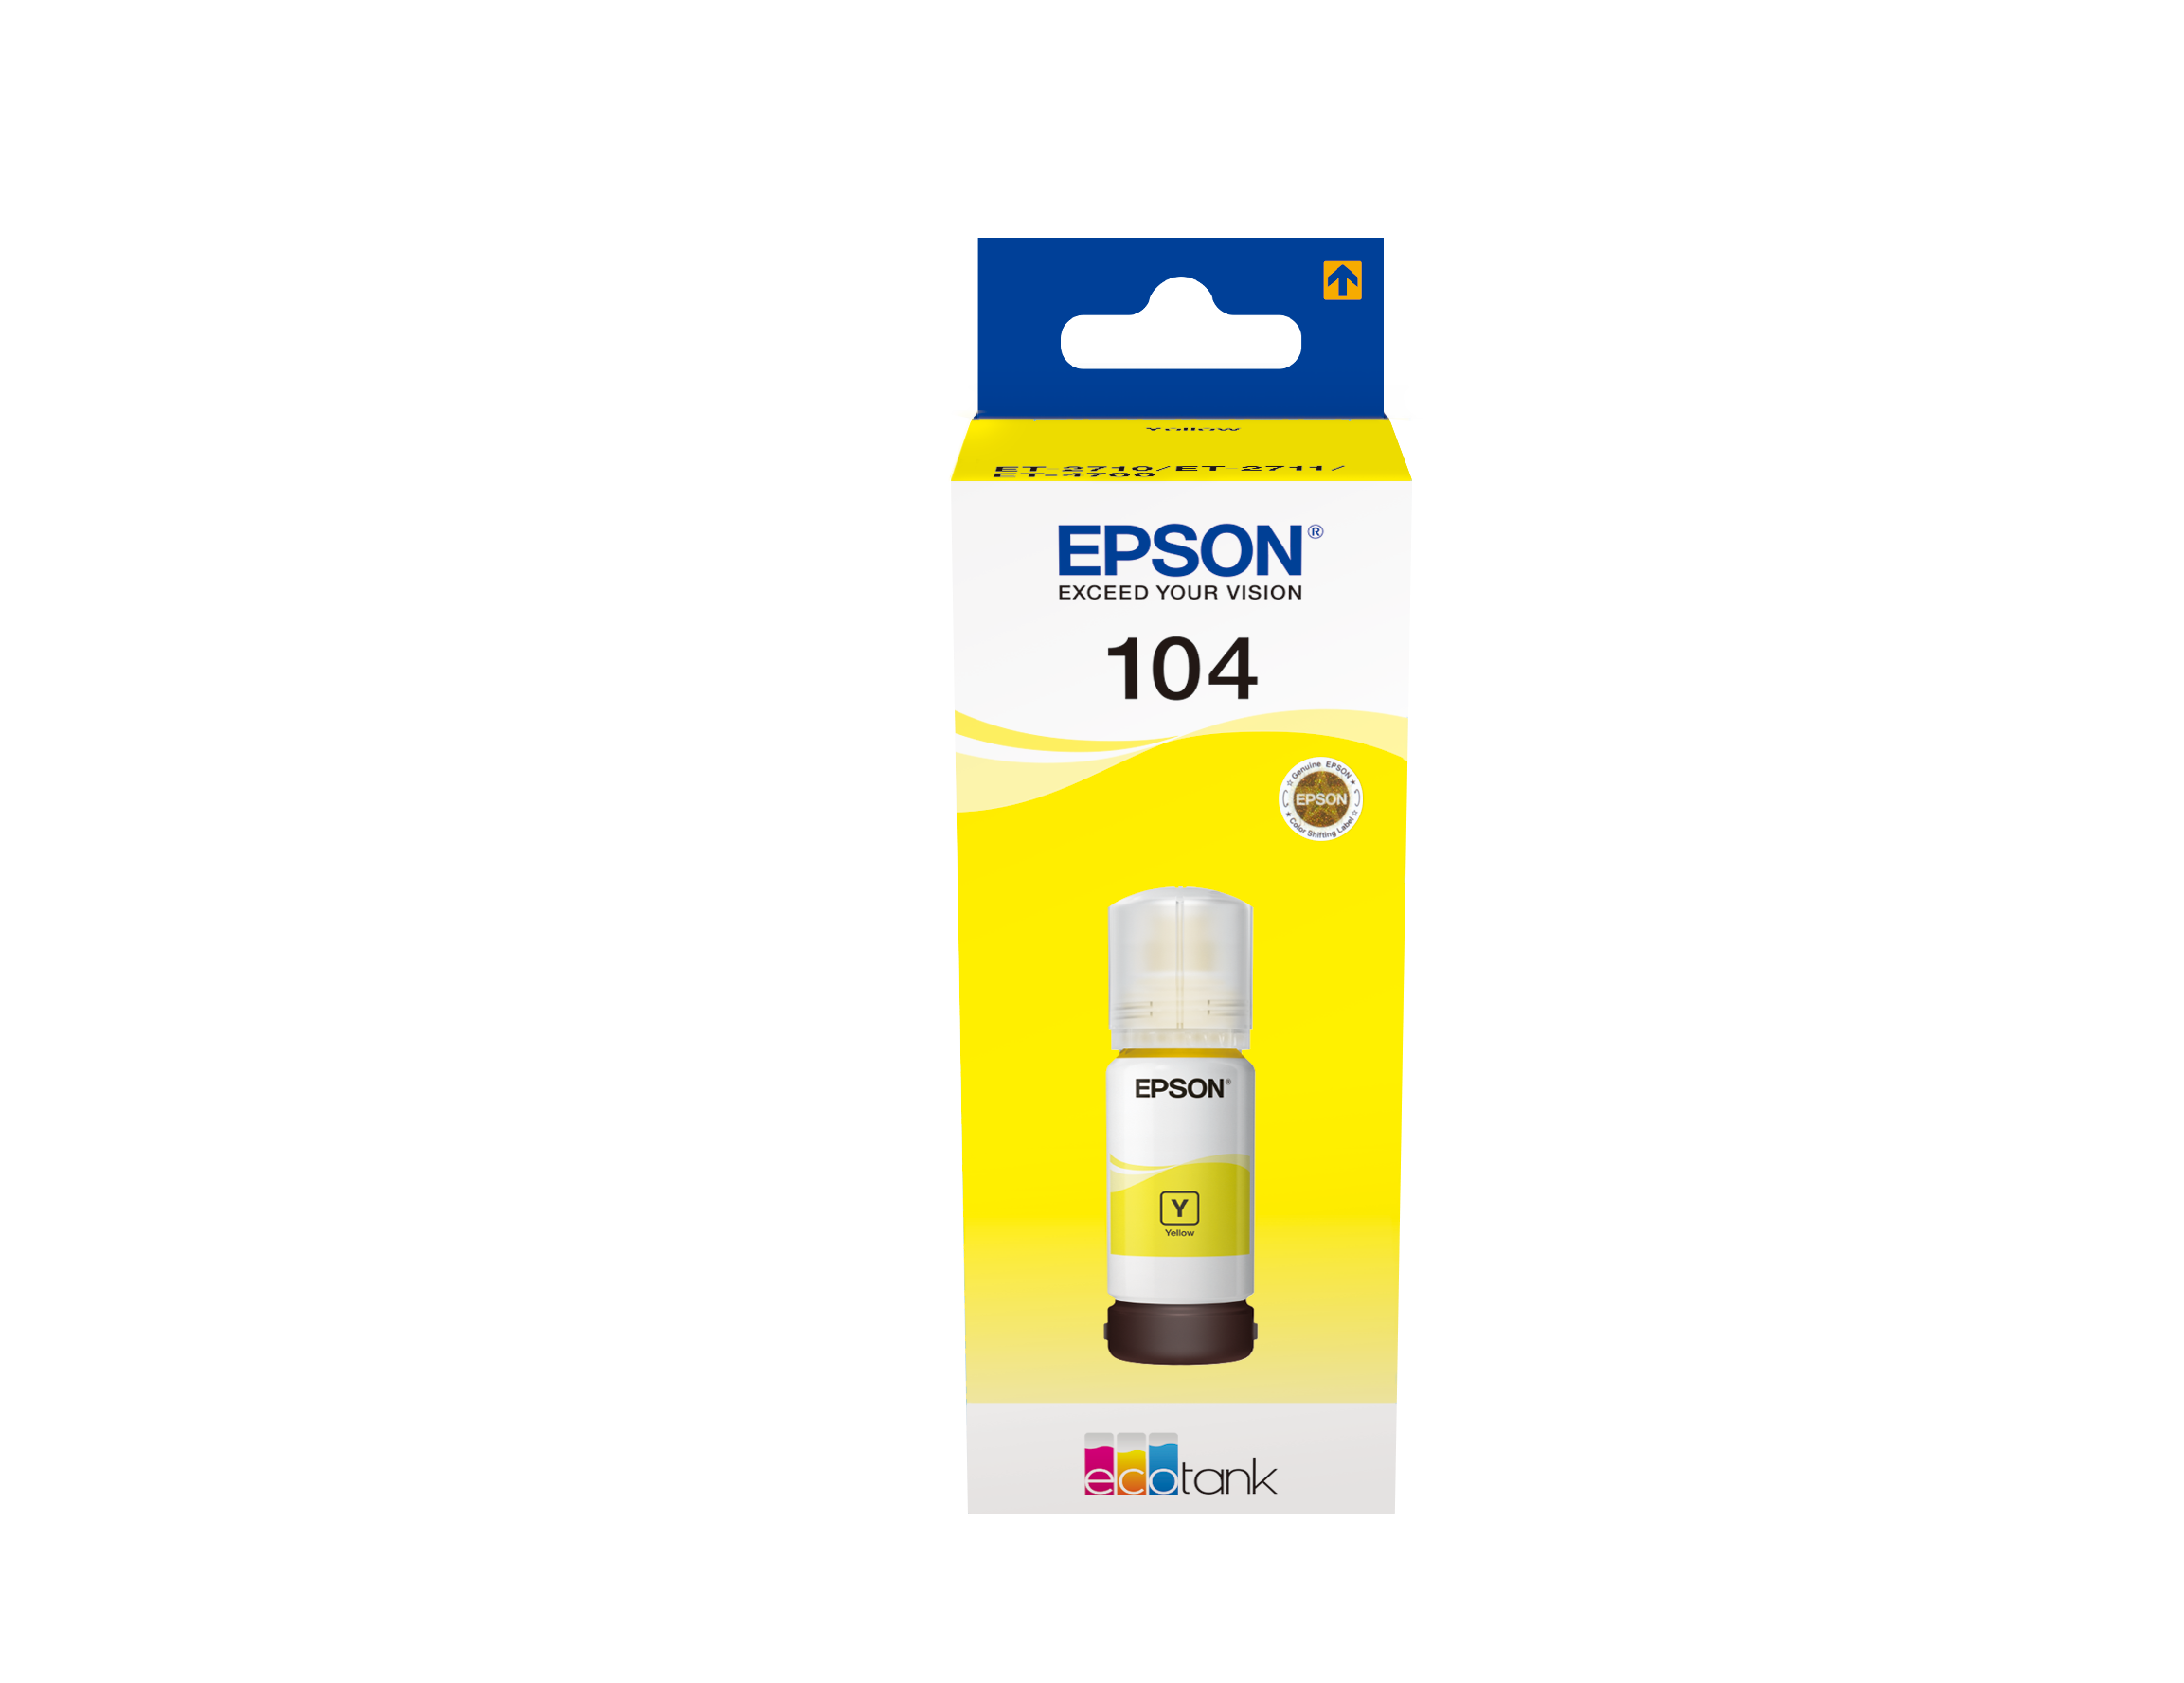 EcoTank ET-4700 EcoTank série Modèle d'imprimante Epson Cartouches d'encre  Epson offre : série 104 noir + 3 couleurs (marque 123encre)